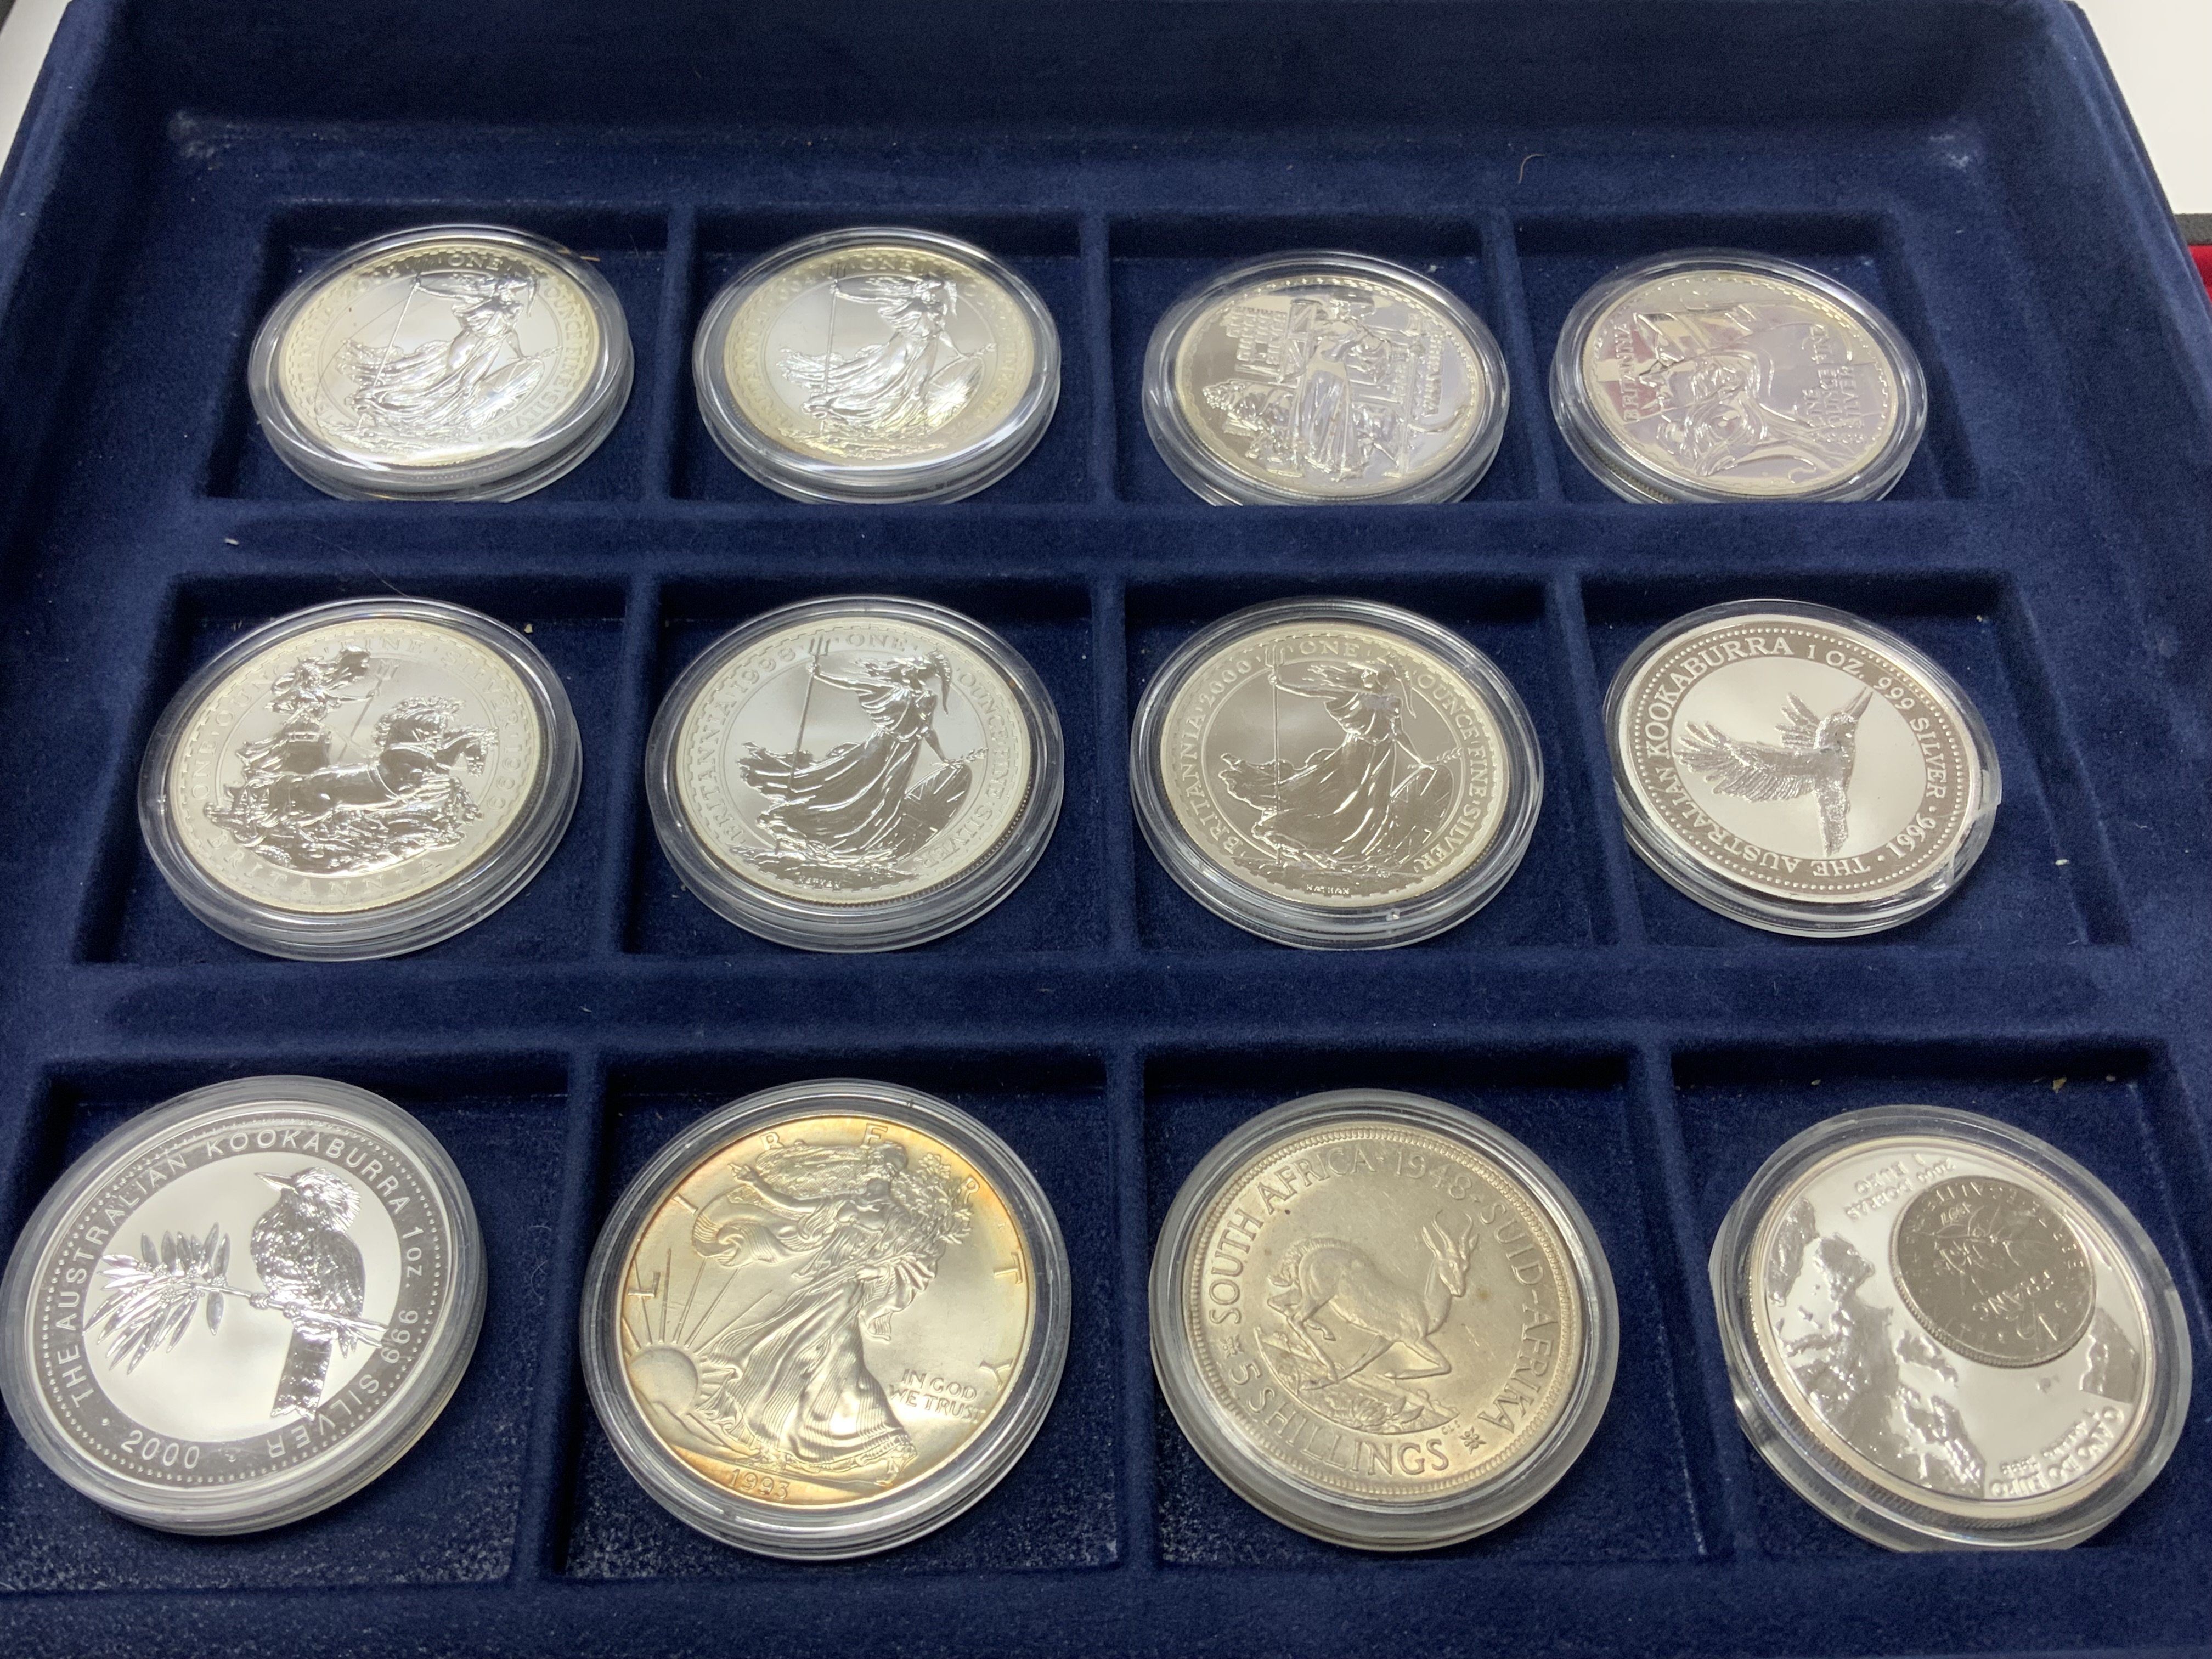 12 cased 1oz fine silver coins to include 7 Britta